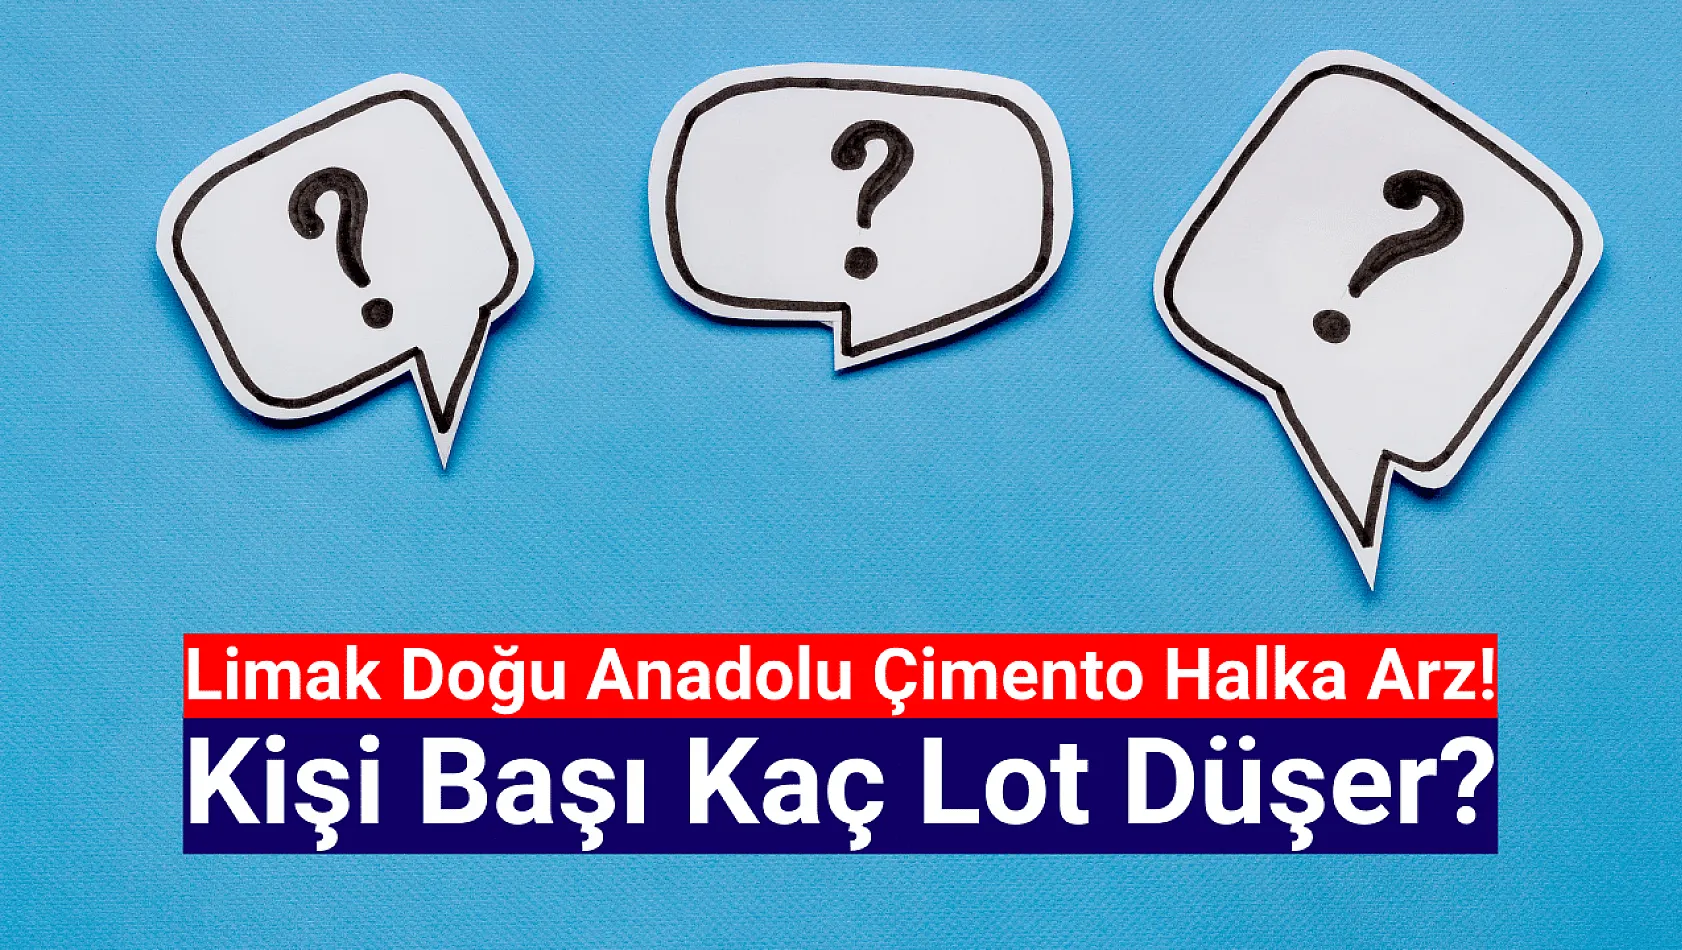 Limak Doğu Anadolu Çimento (LMKDC) kişi başı kaç lot düşer?